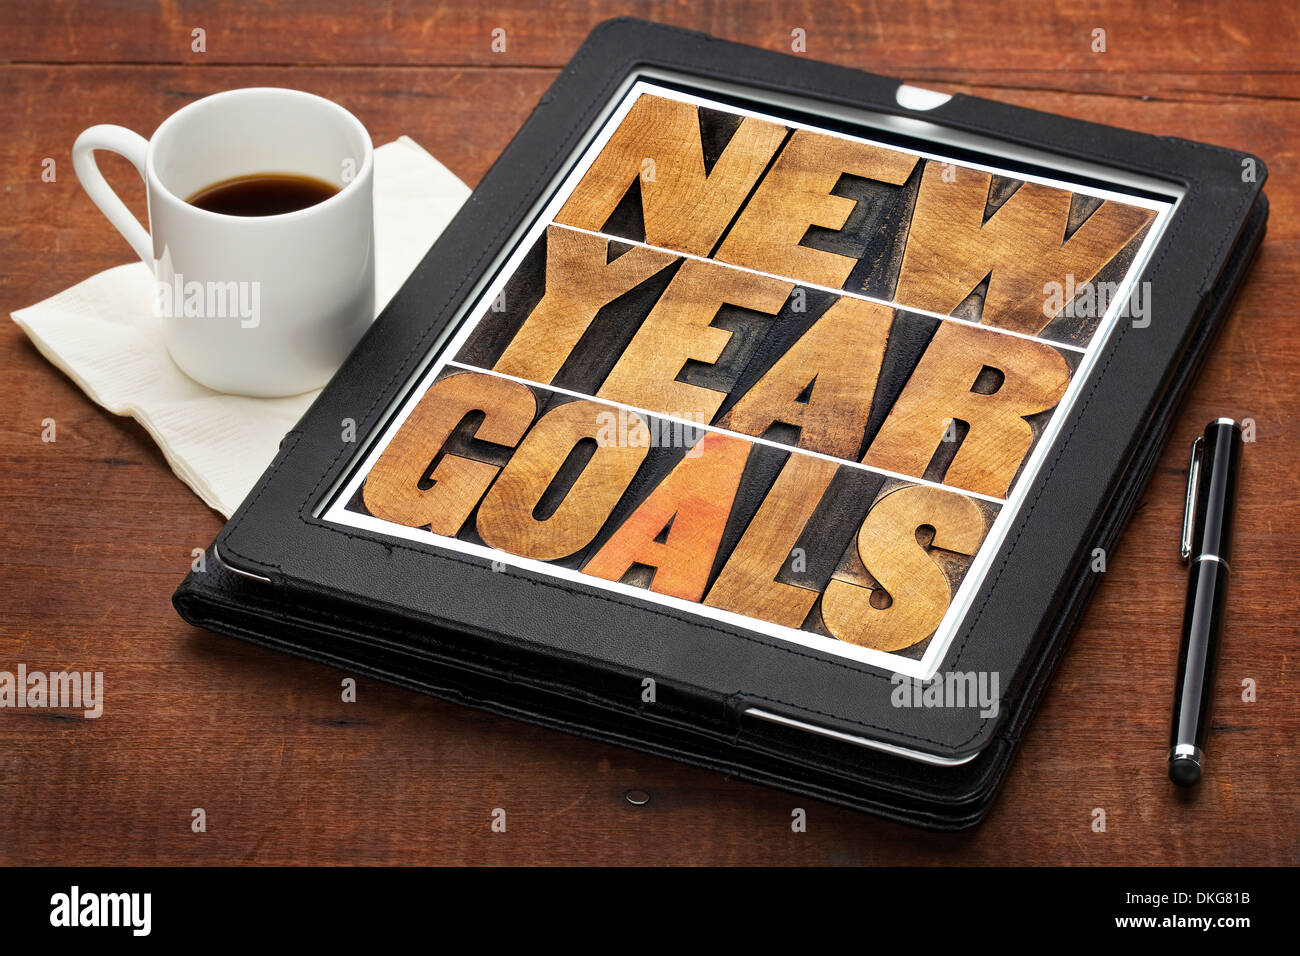 Objectifs de la nouvelle année - résolutions concept - texte en typographie vintage bois type sur un écran de tablette numérique Banque D'Images